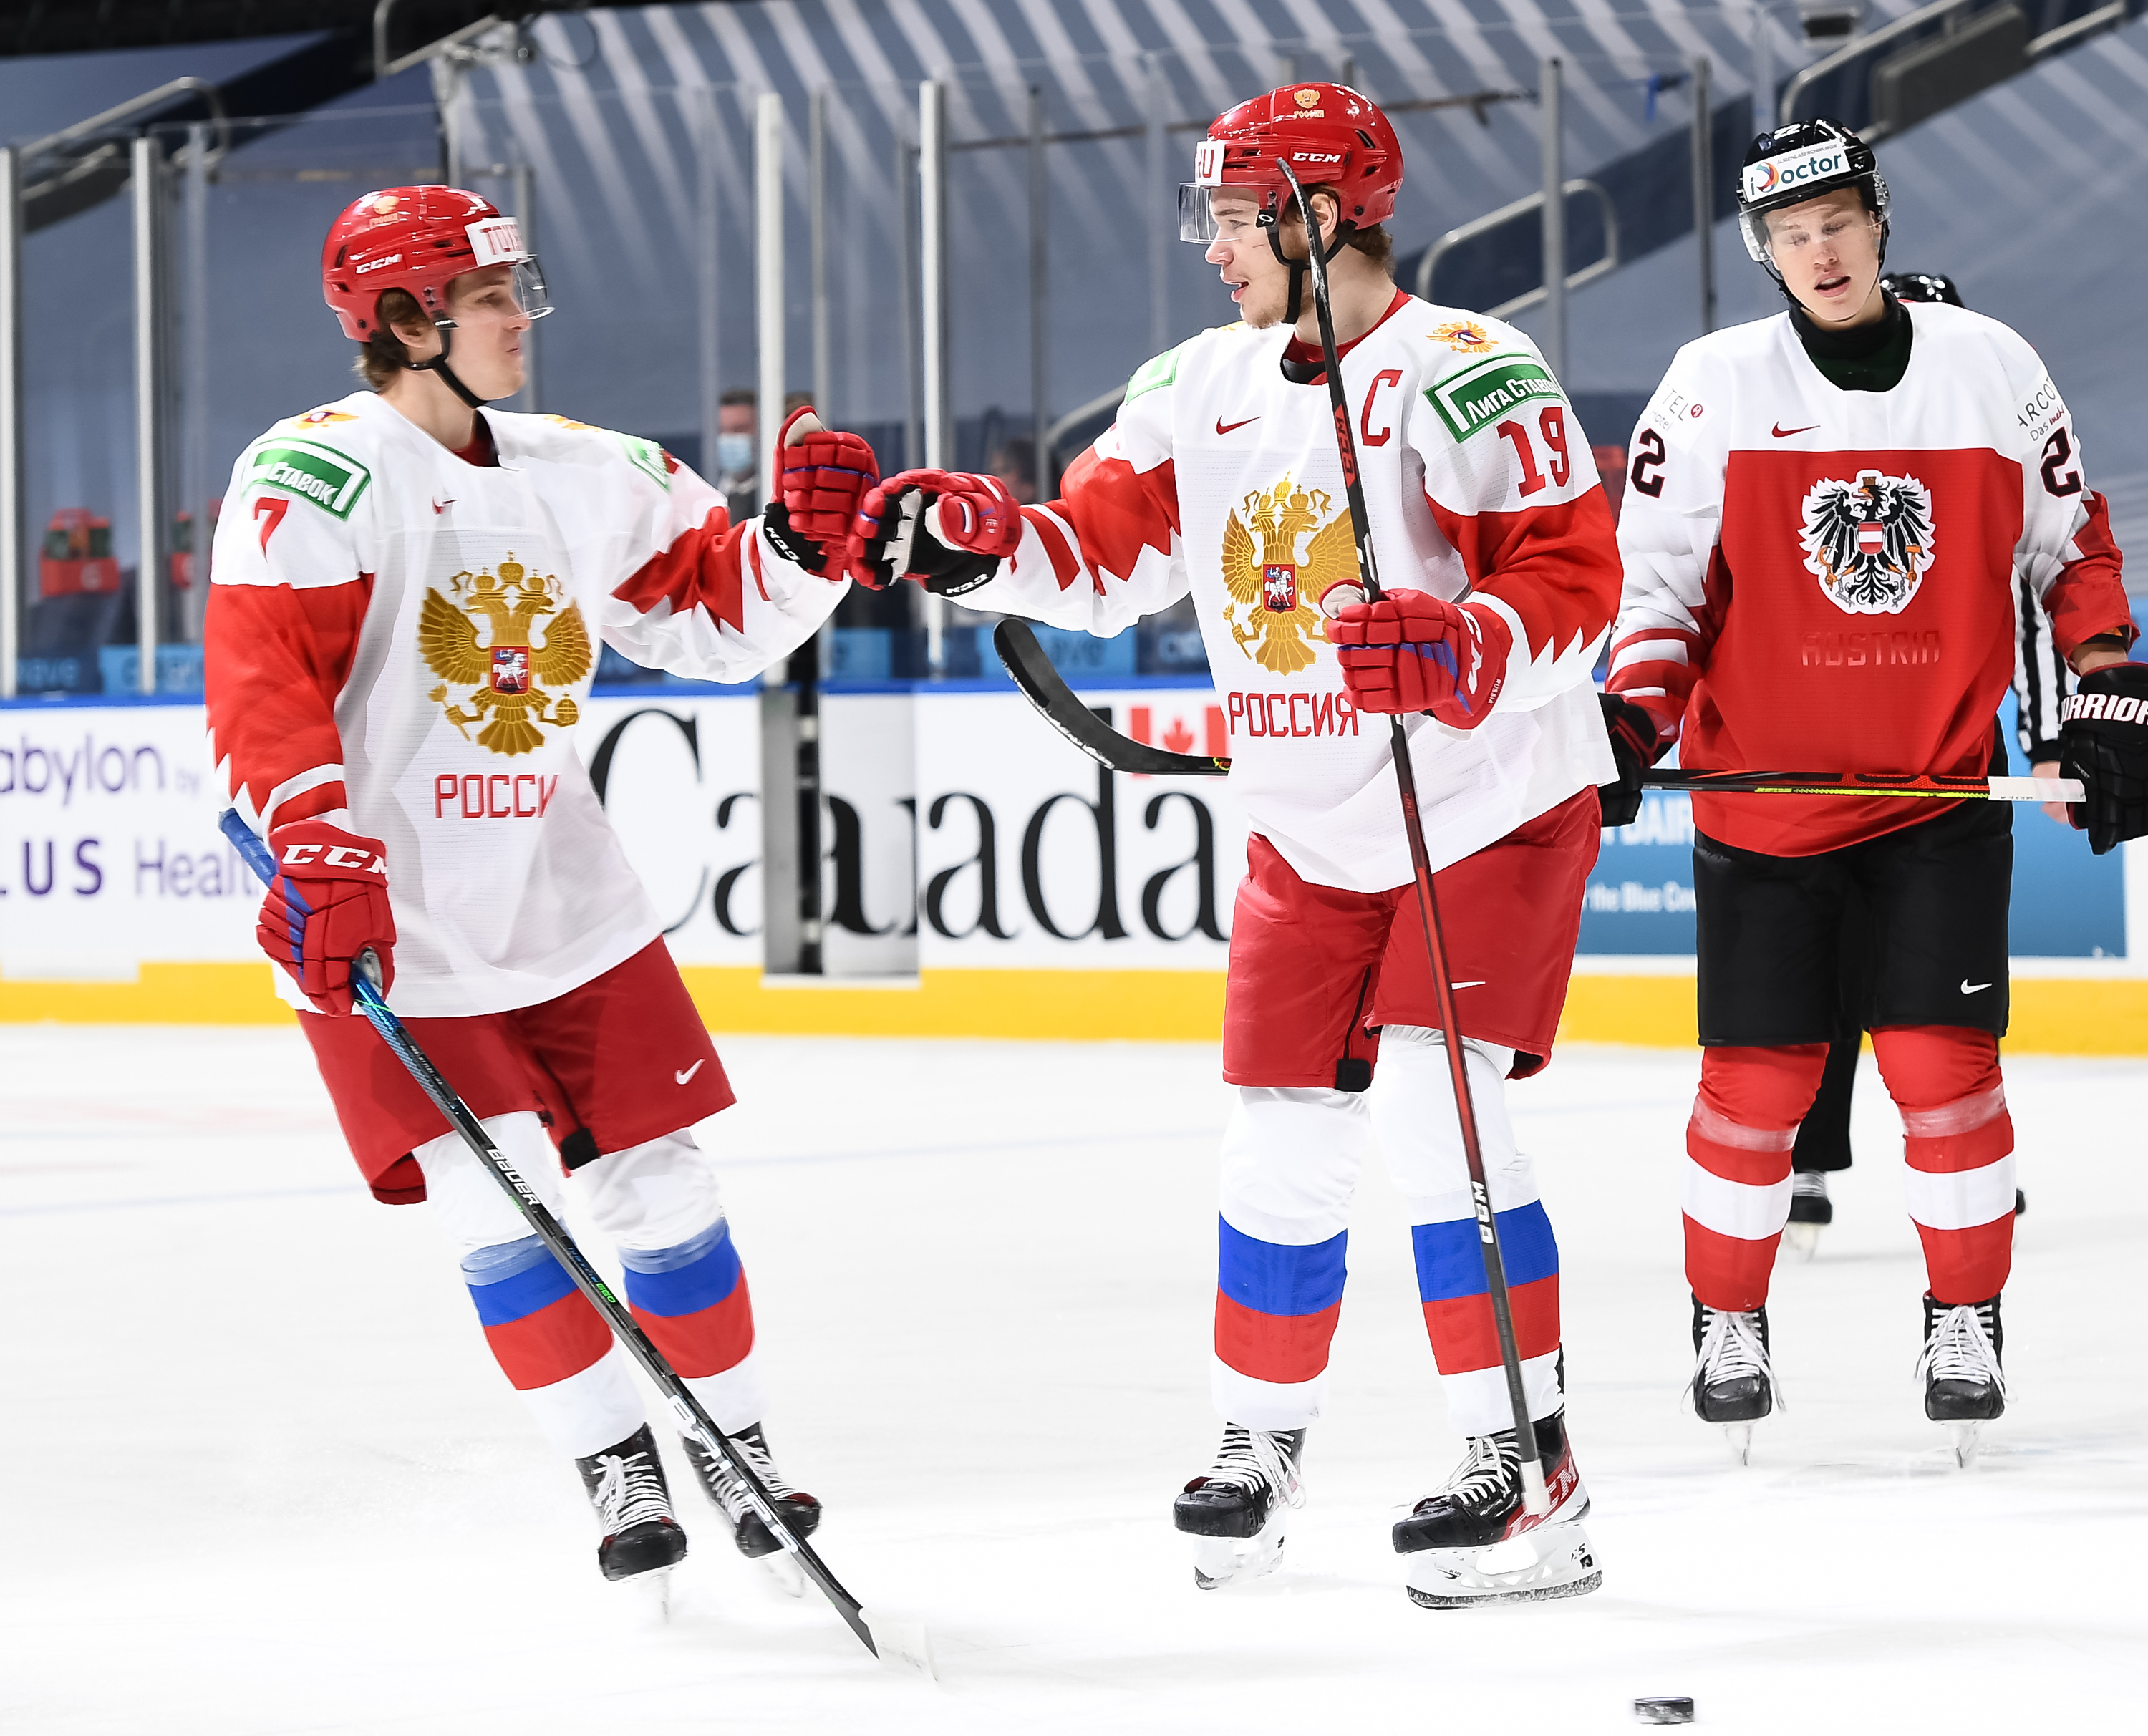 Результаты хоккейного матча россия